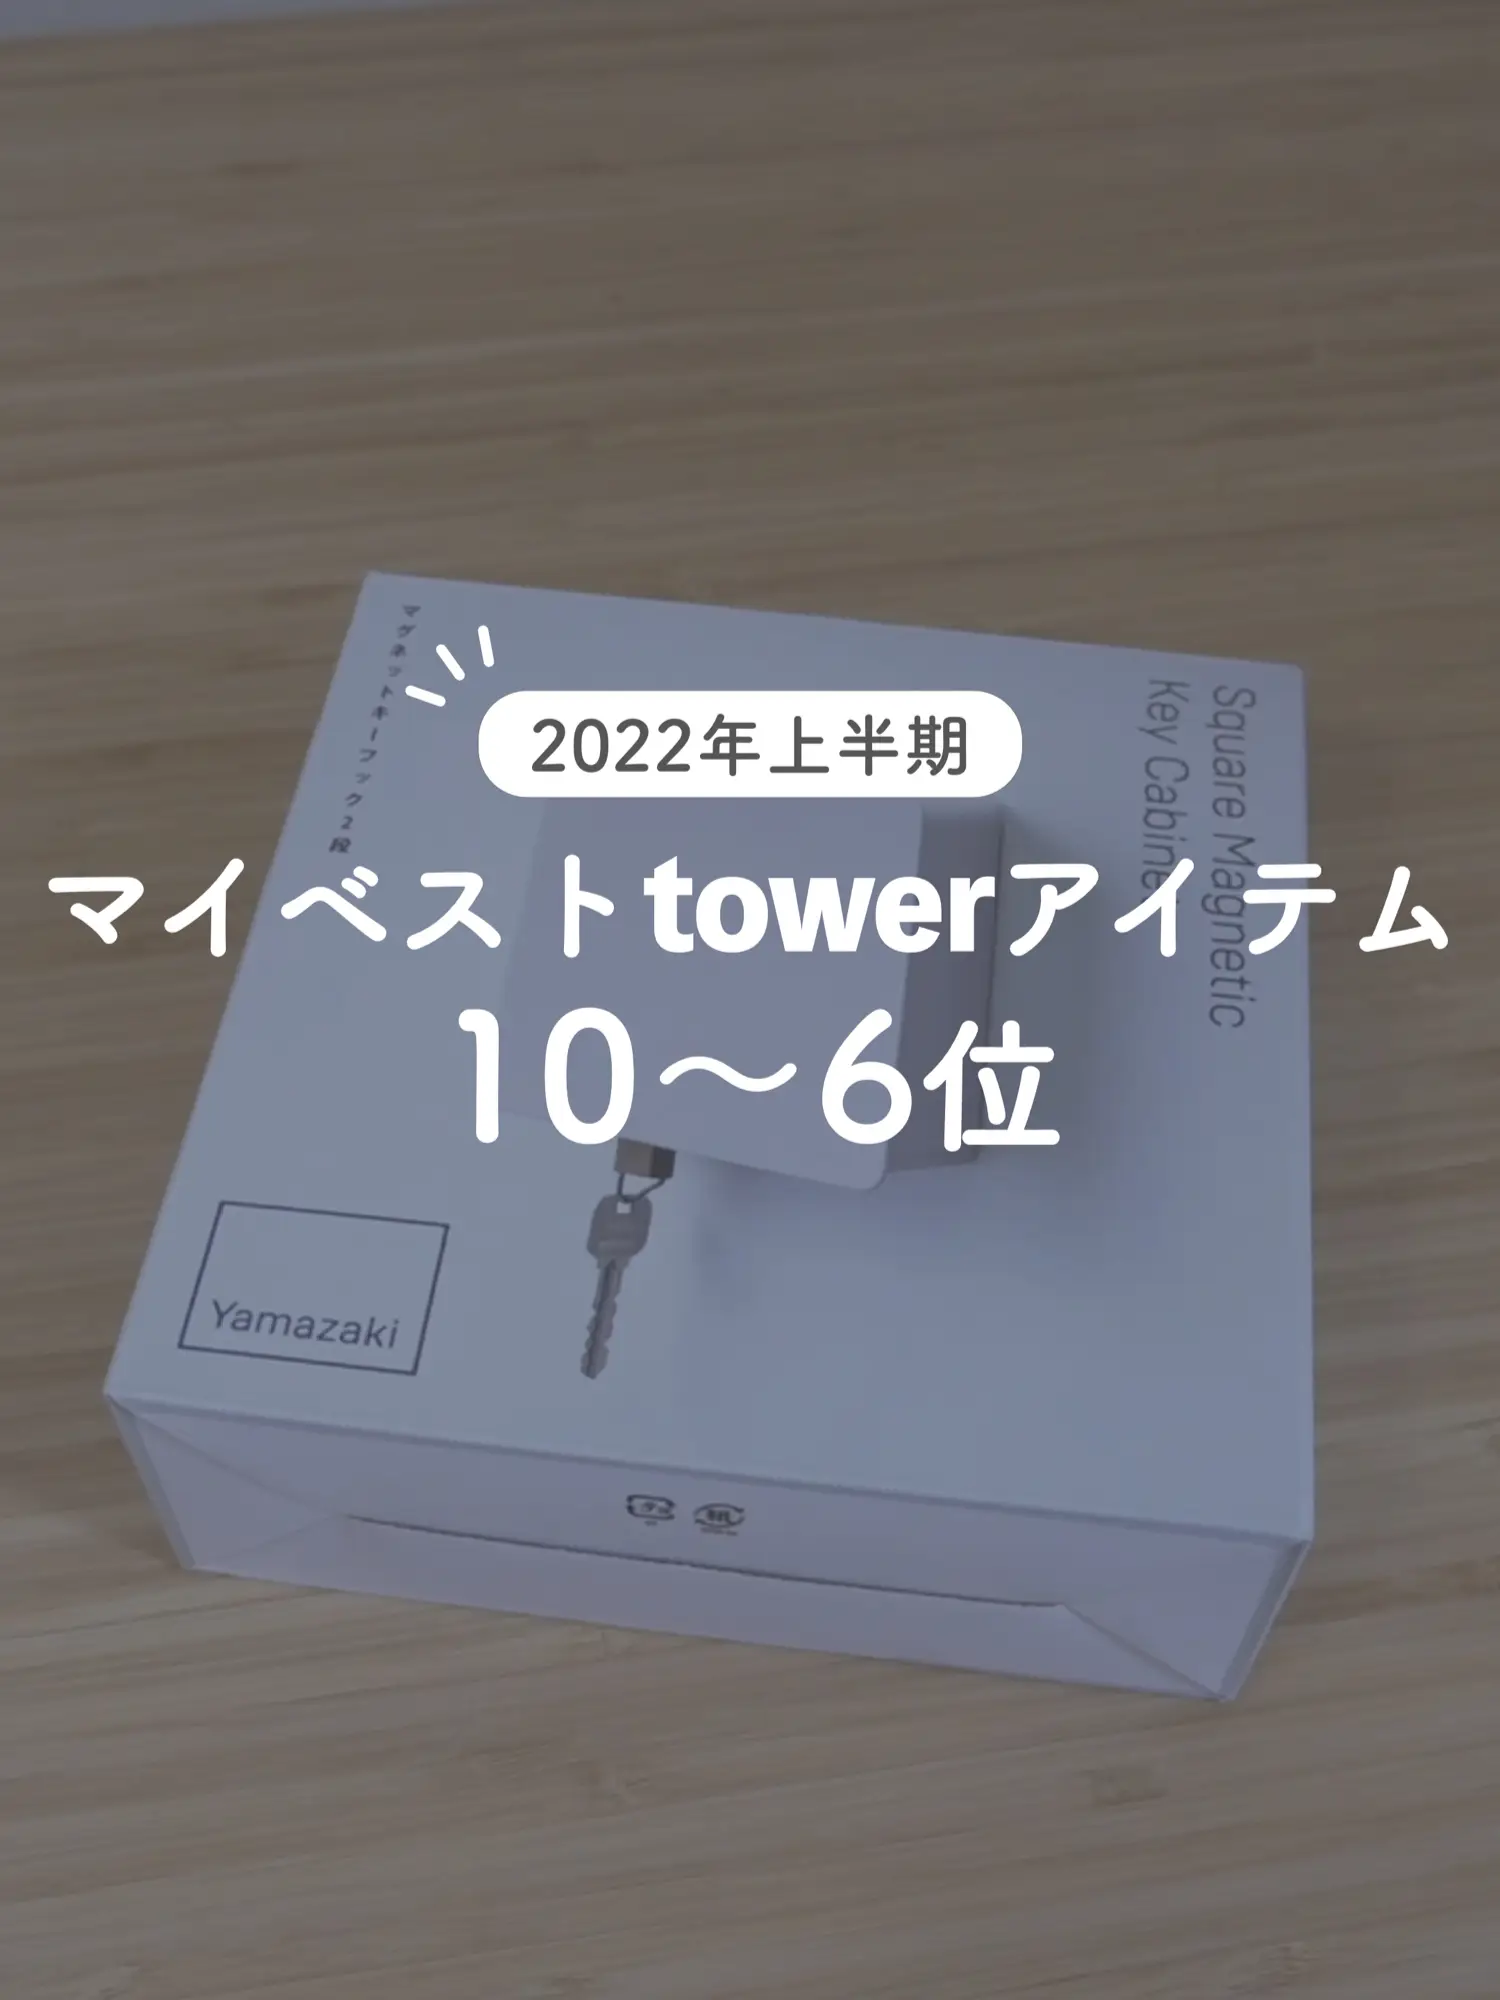 2022年上半期に買ってよかった「tower」アイテム10位～6位の画像 (1枚目)